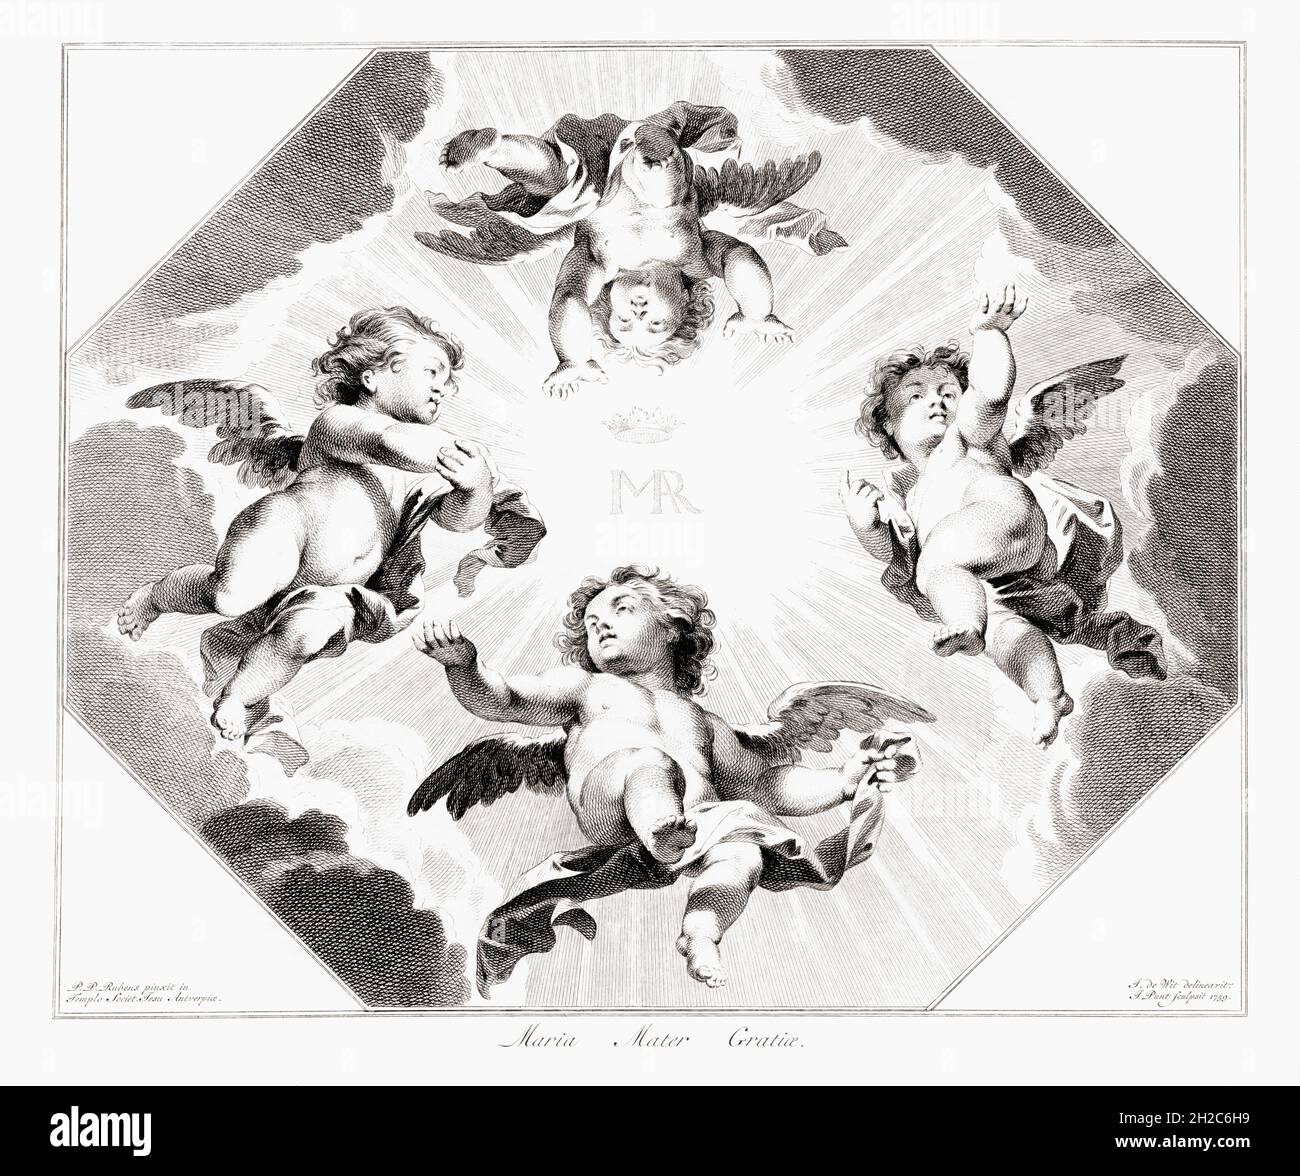 Vier kindliche Engel feiern die Jungfrau Maria. Der lateinische Ausdruck übersetzt Maria, Mutter der Gnade, das ist ein römisch-katholisches Gebet an die Mutter Jesu. Nach einem Stich von Jan Punt aus dem 18. Jahrhundert nach einem Werk von Peter Paul Rubens. Stockfoto